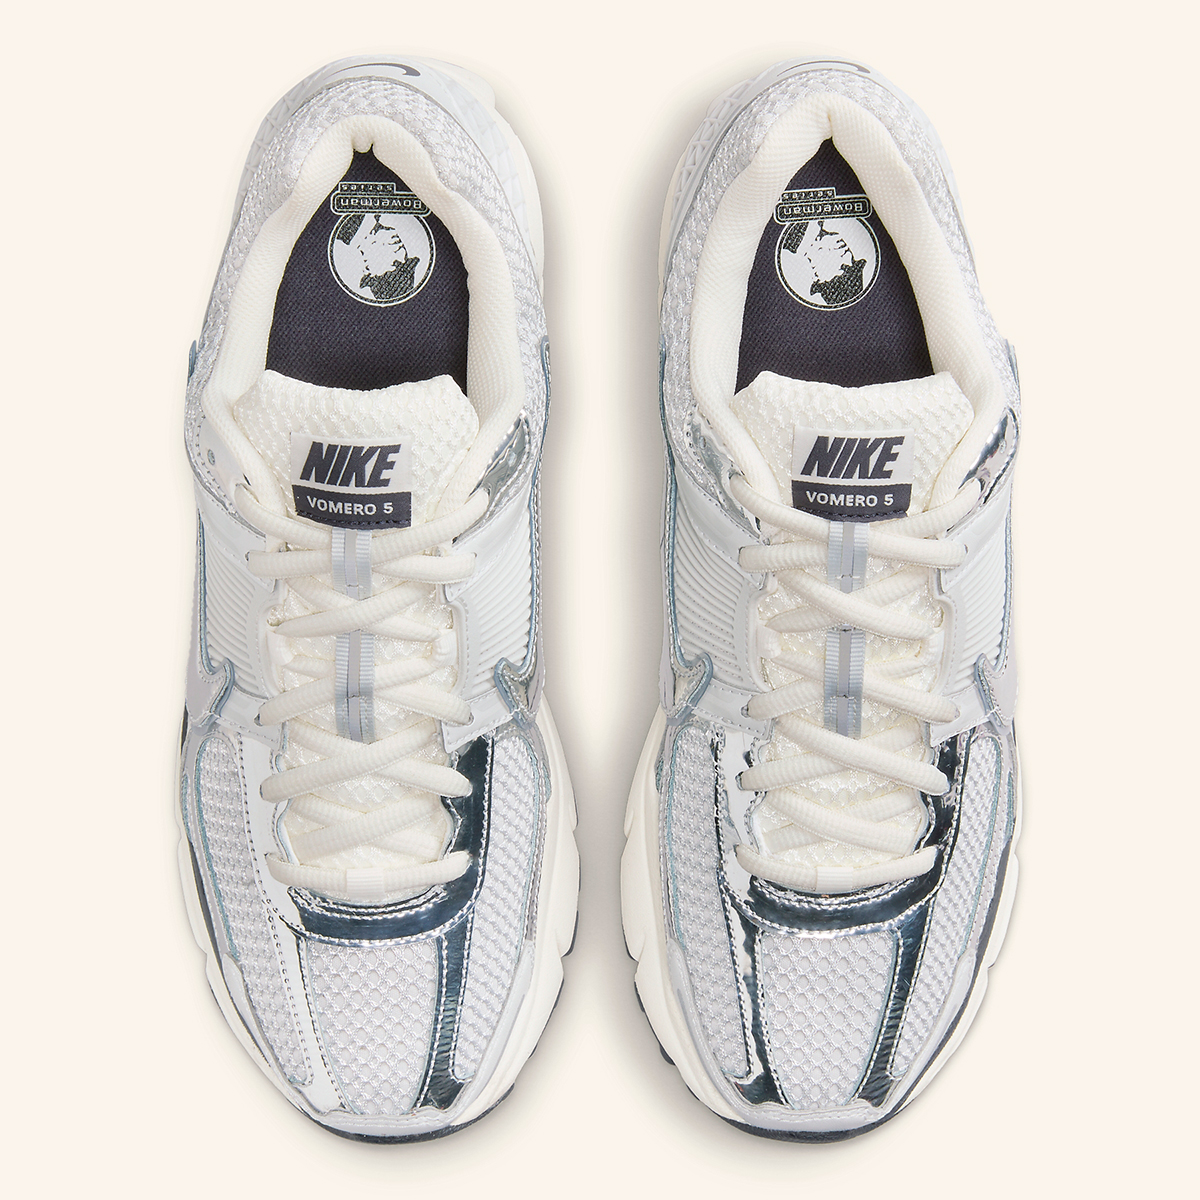 Nike Zoom Vomero 5 Summit White Metallic Silver Hj3758 001 3